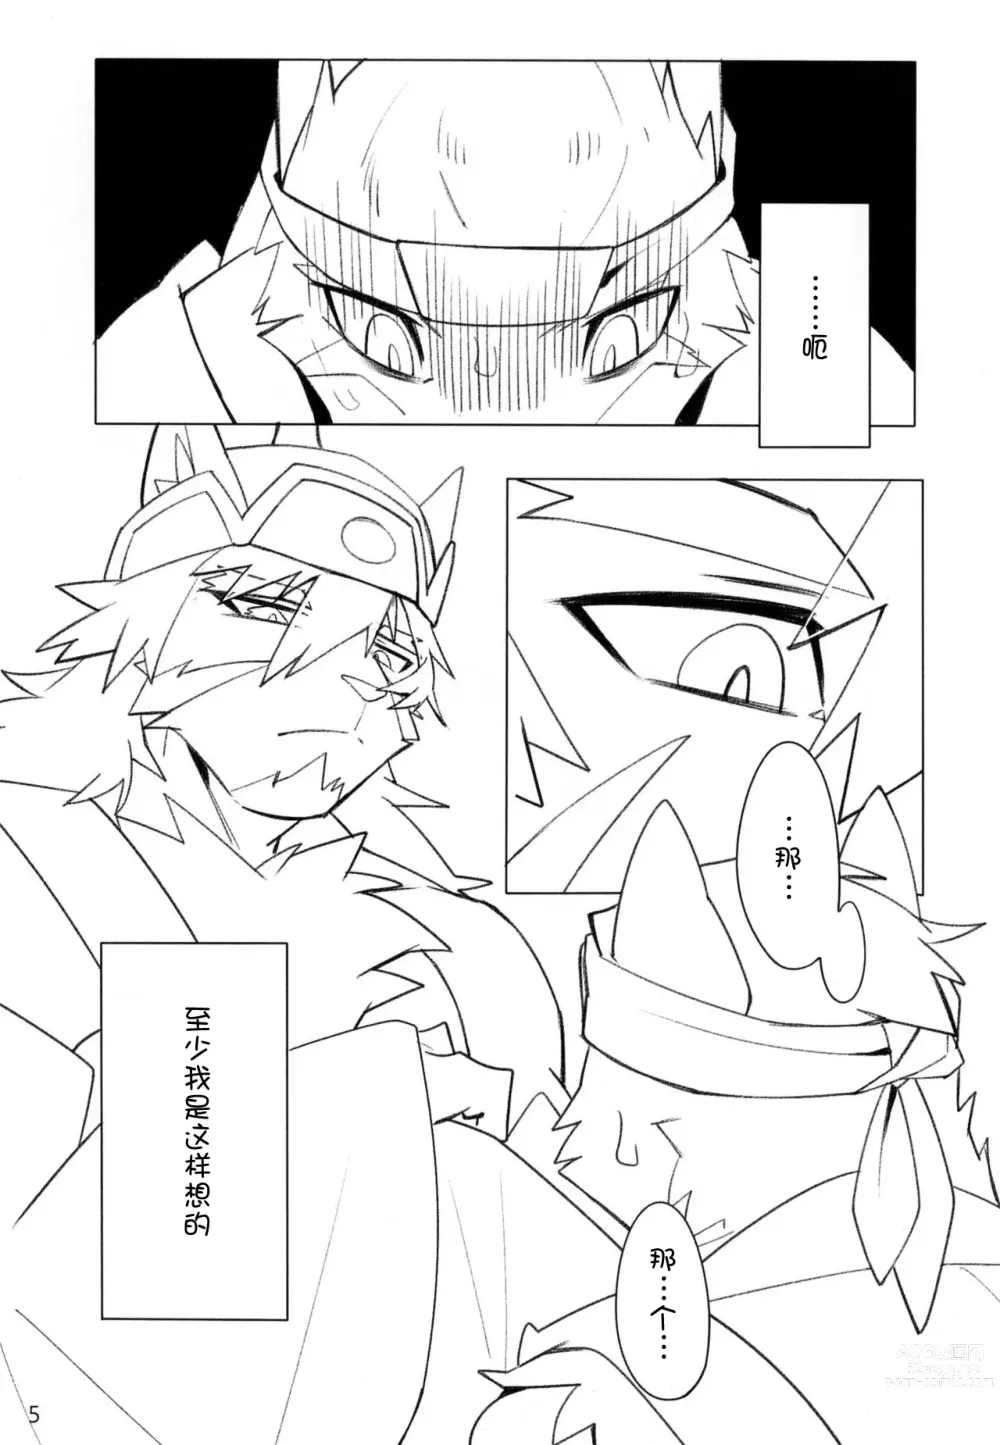 Page 5 of doujinshi [雨][刃鸣菌个人汉化][escape]